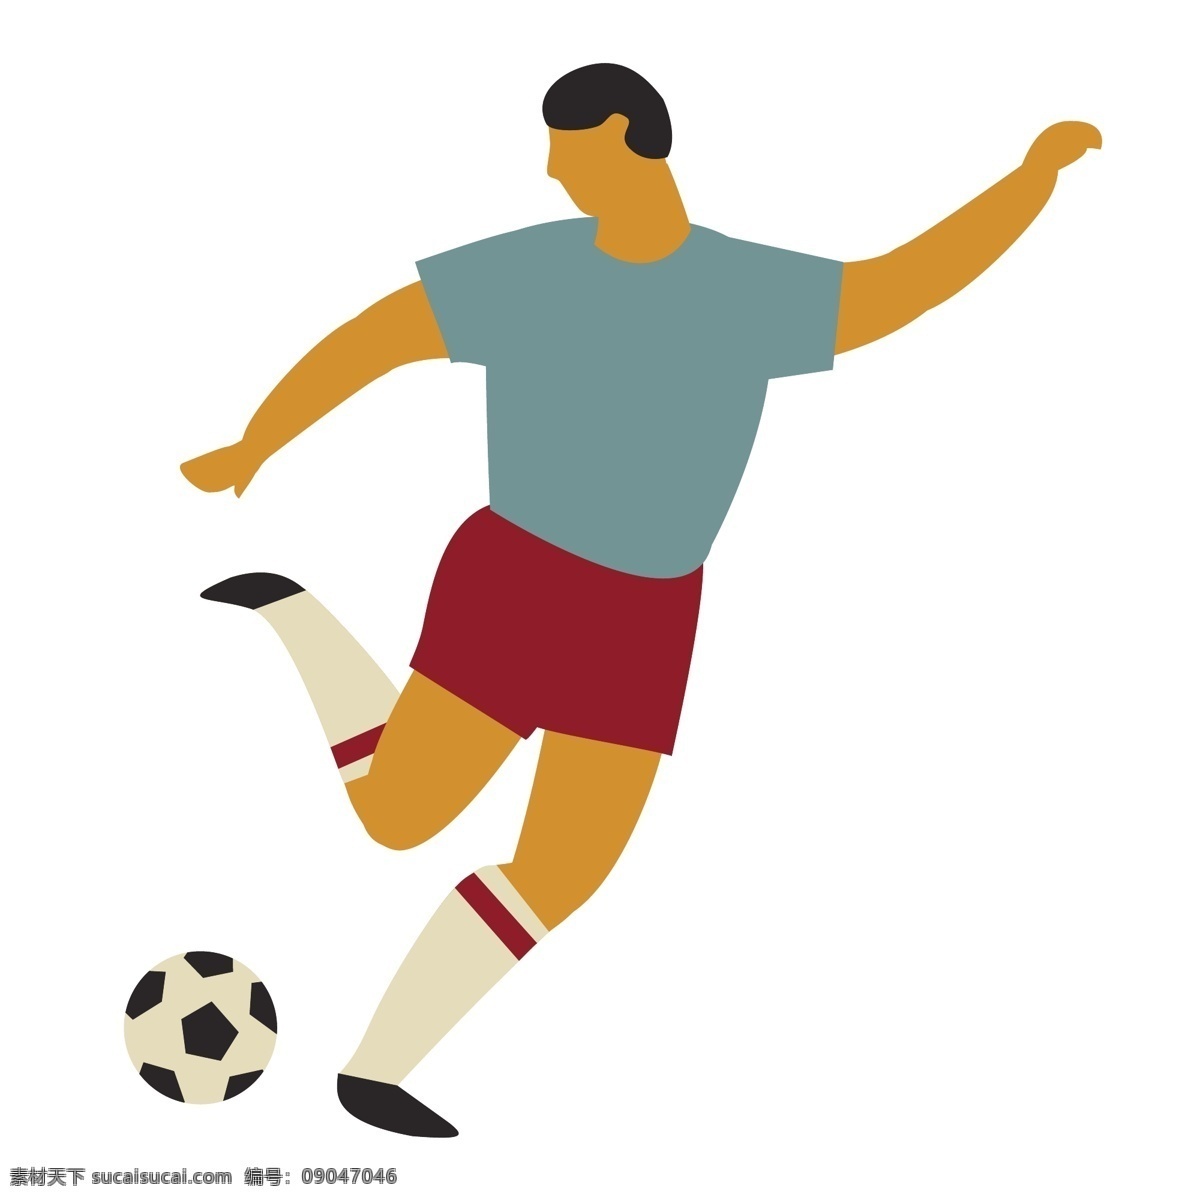 足球 姿势 矢量 足球运动 运动足球 足球姿势 动作 动作姿势 运动姿势 足球运动员 运动员 体育 体育运动员